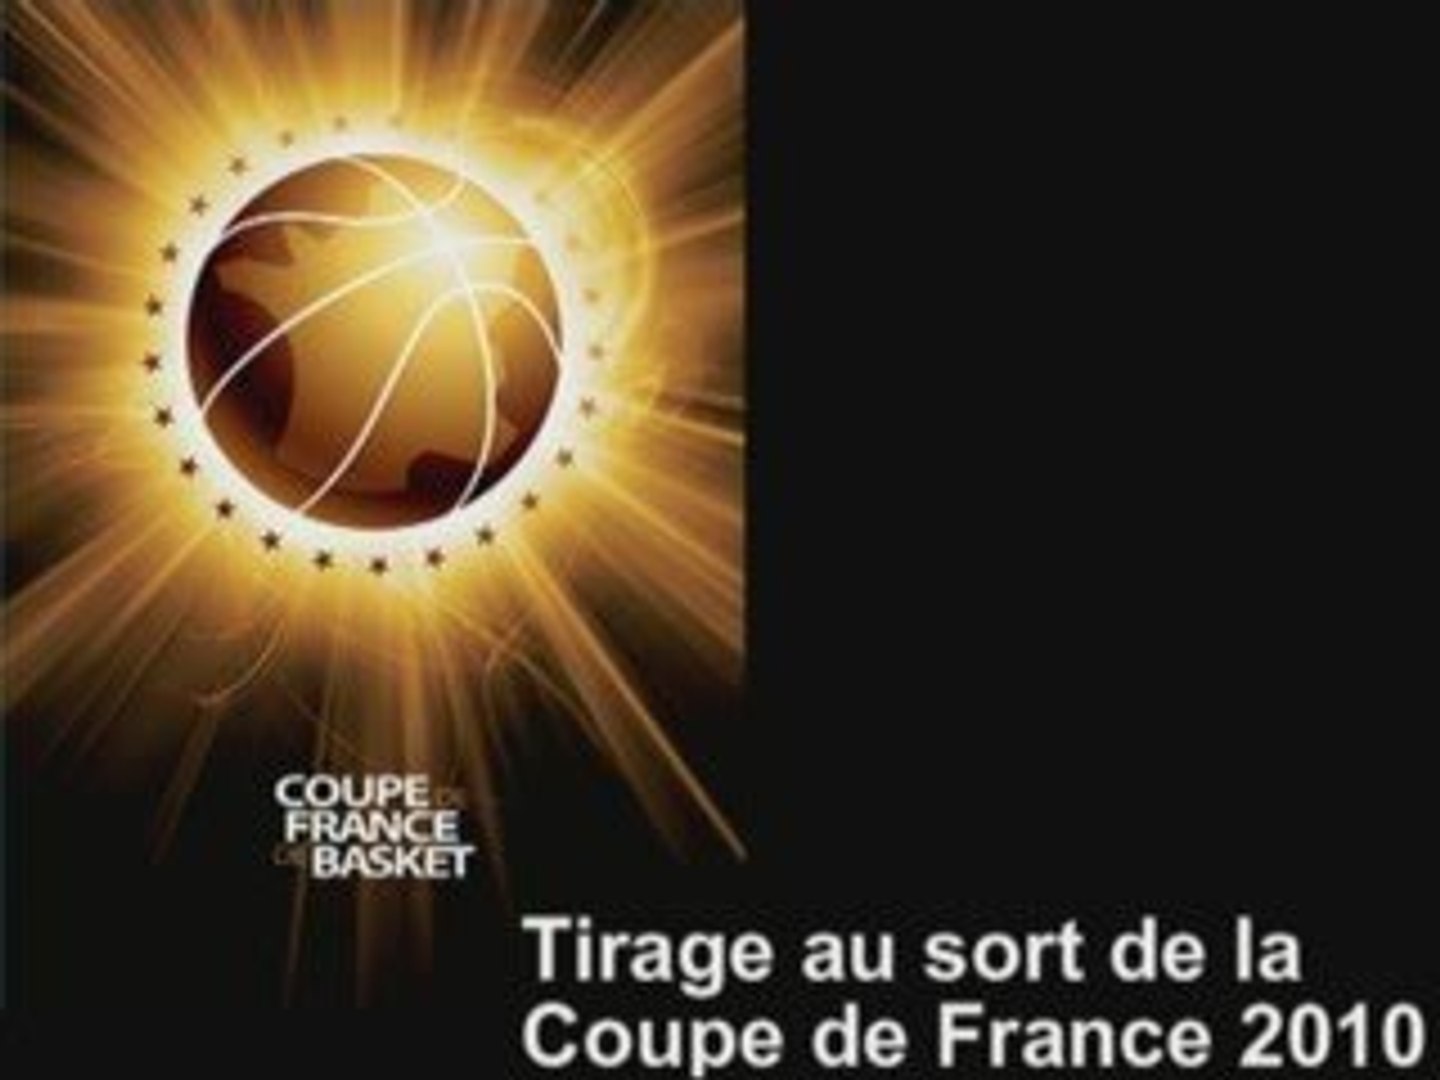 Tirage au sort de la Coupe de France de Basket 2010 - Vidéo Dailymotion